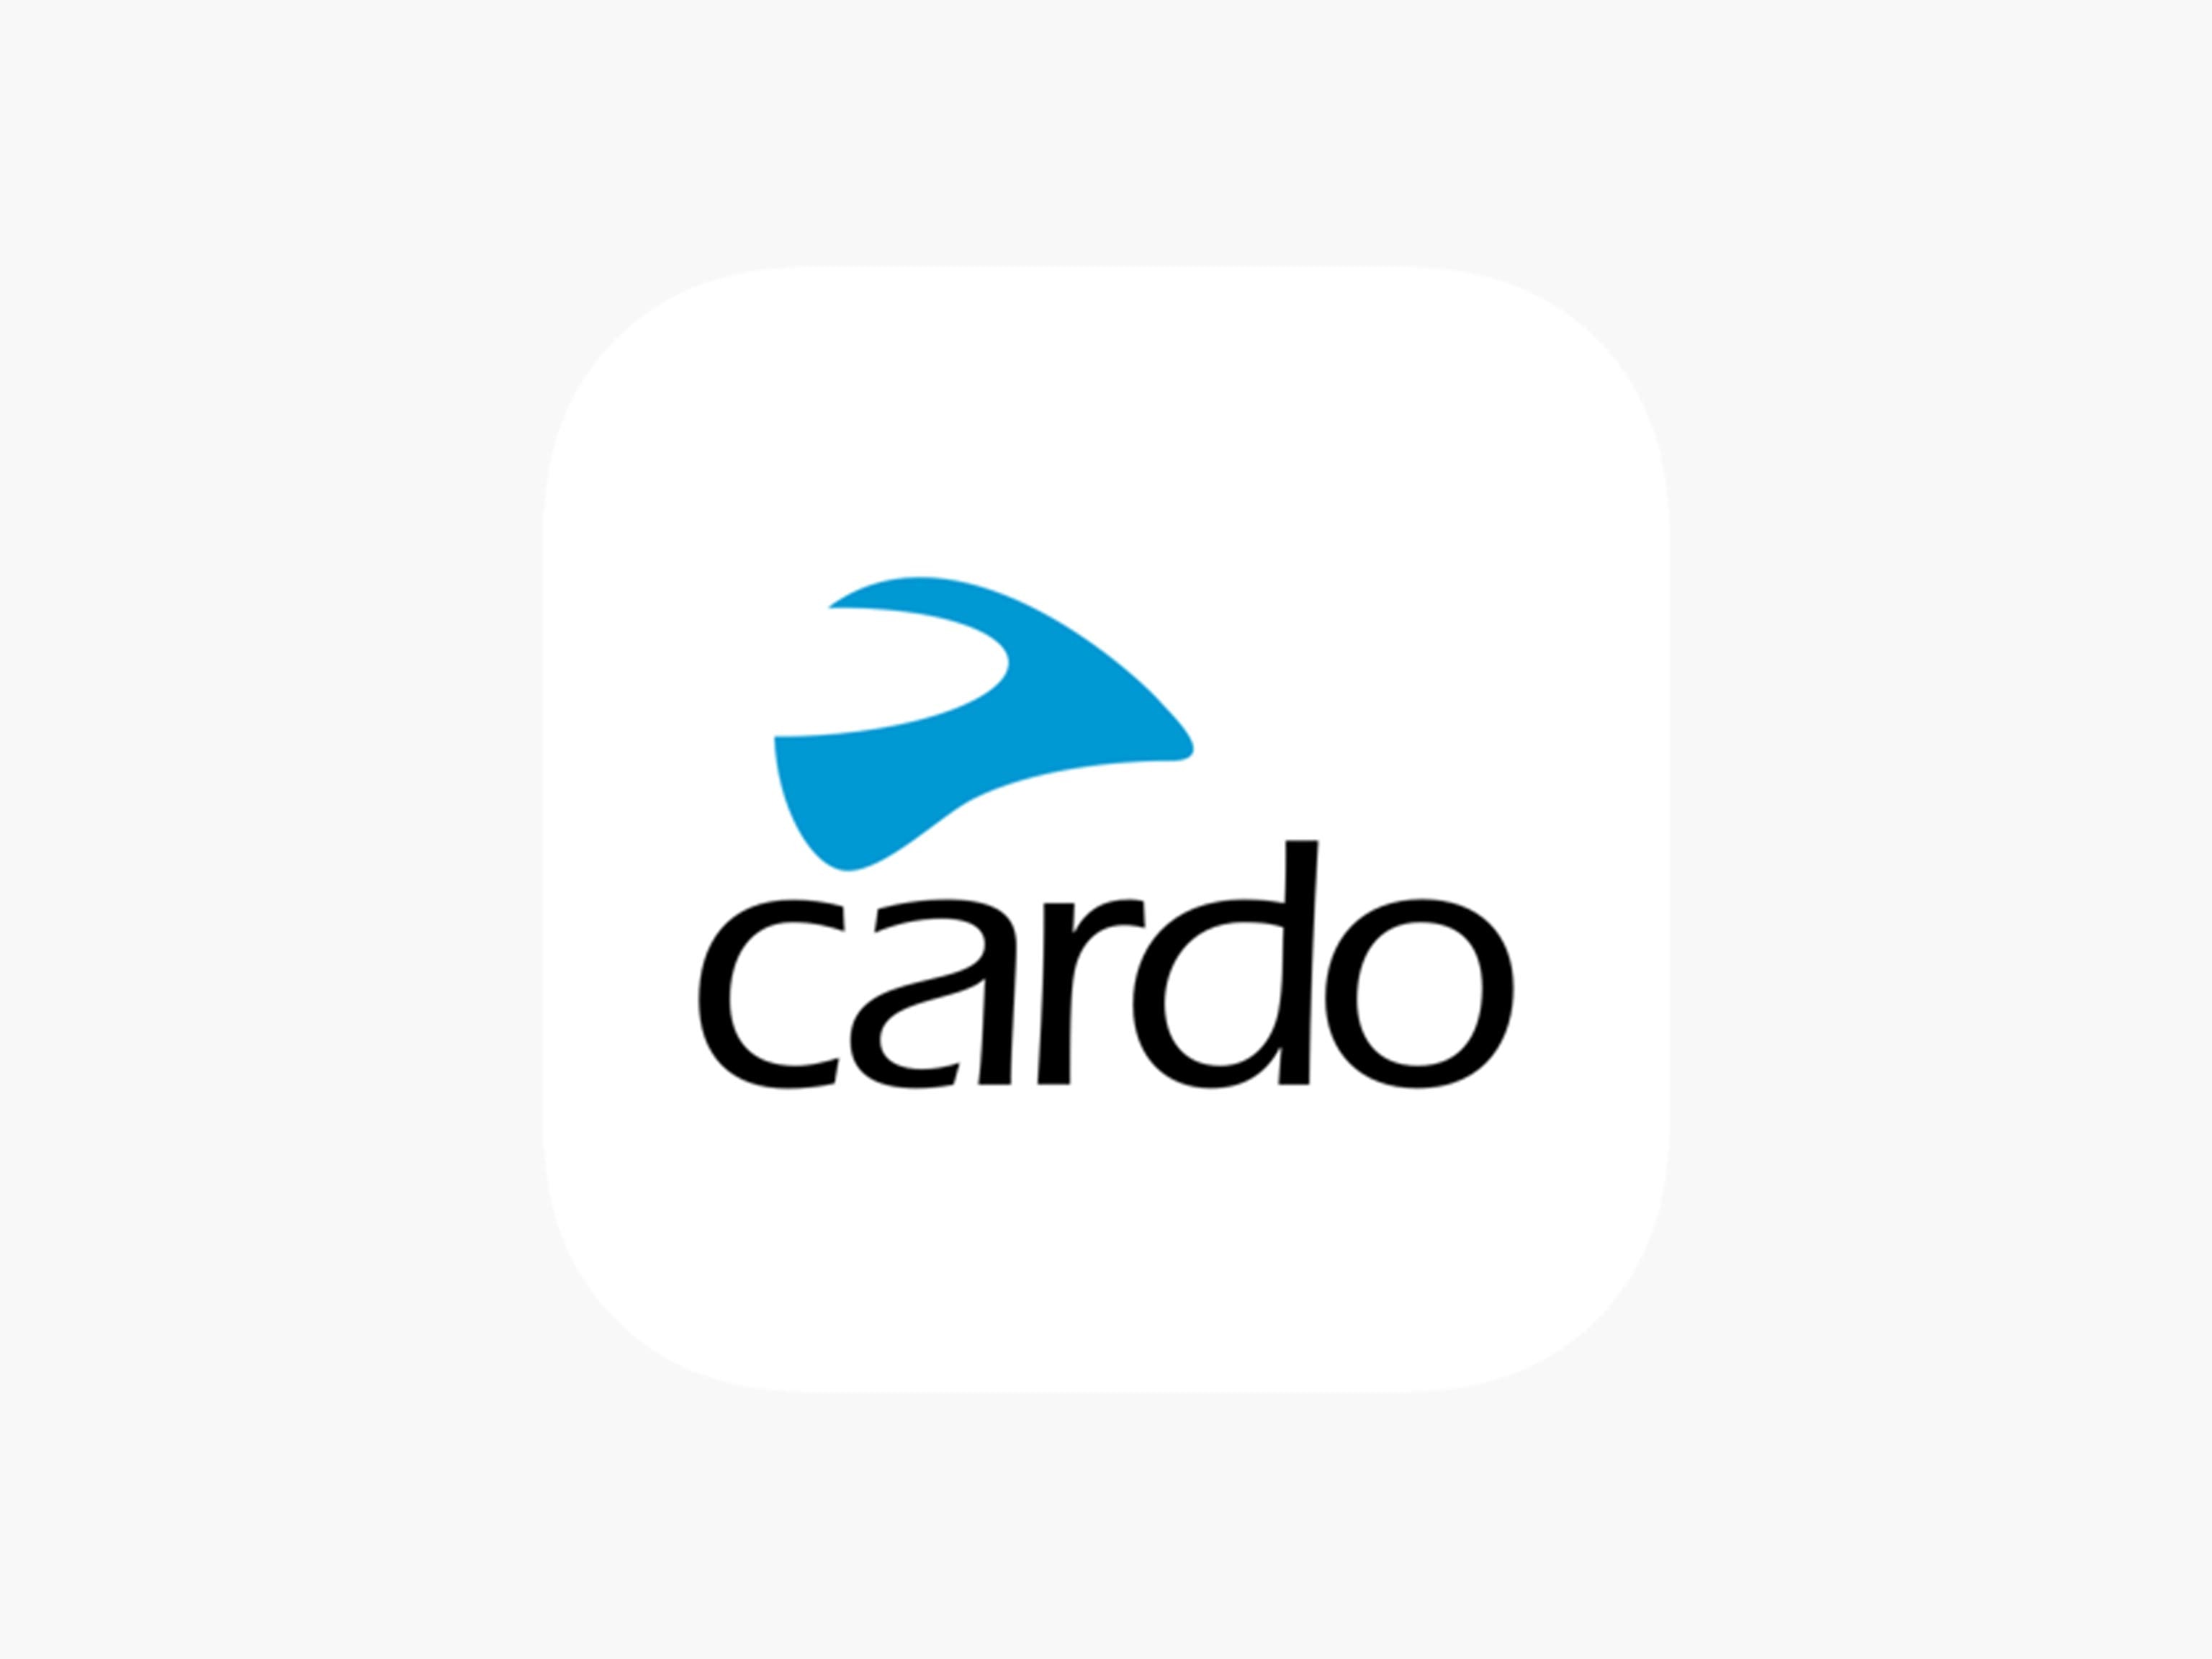 Cardo app logo